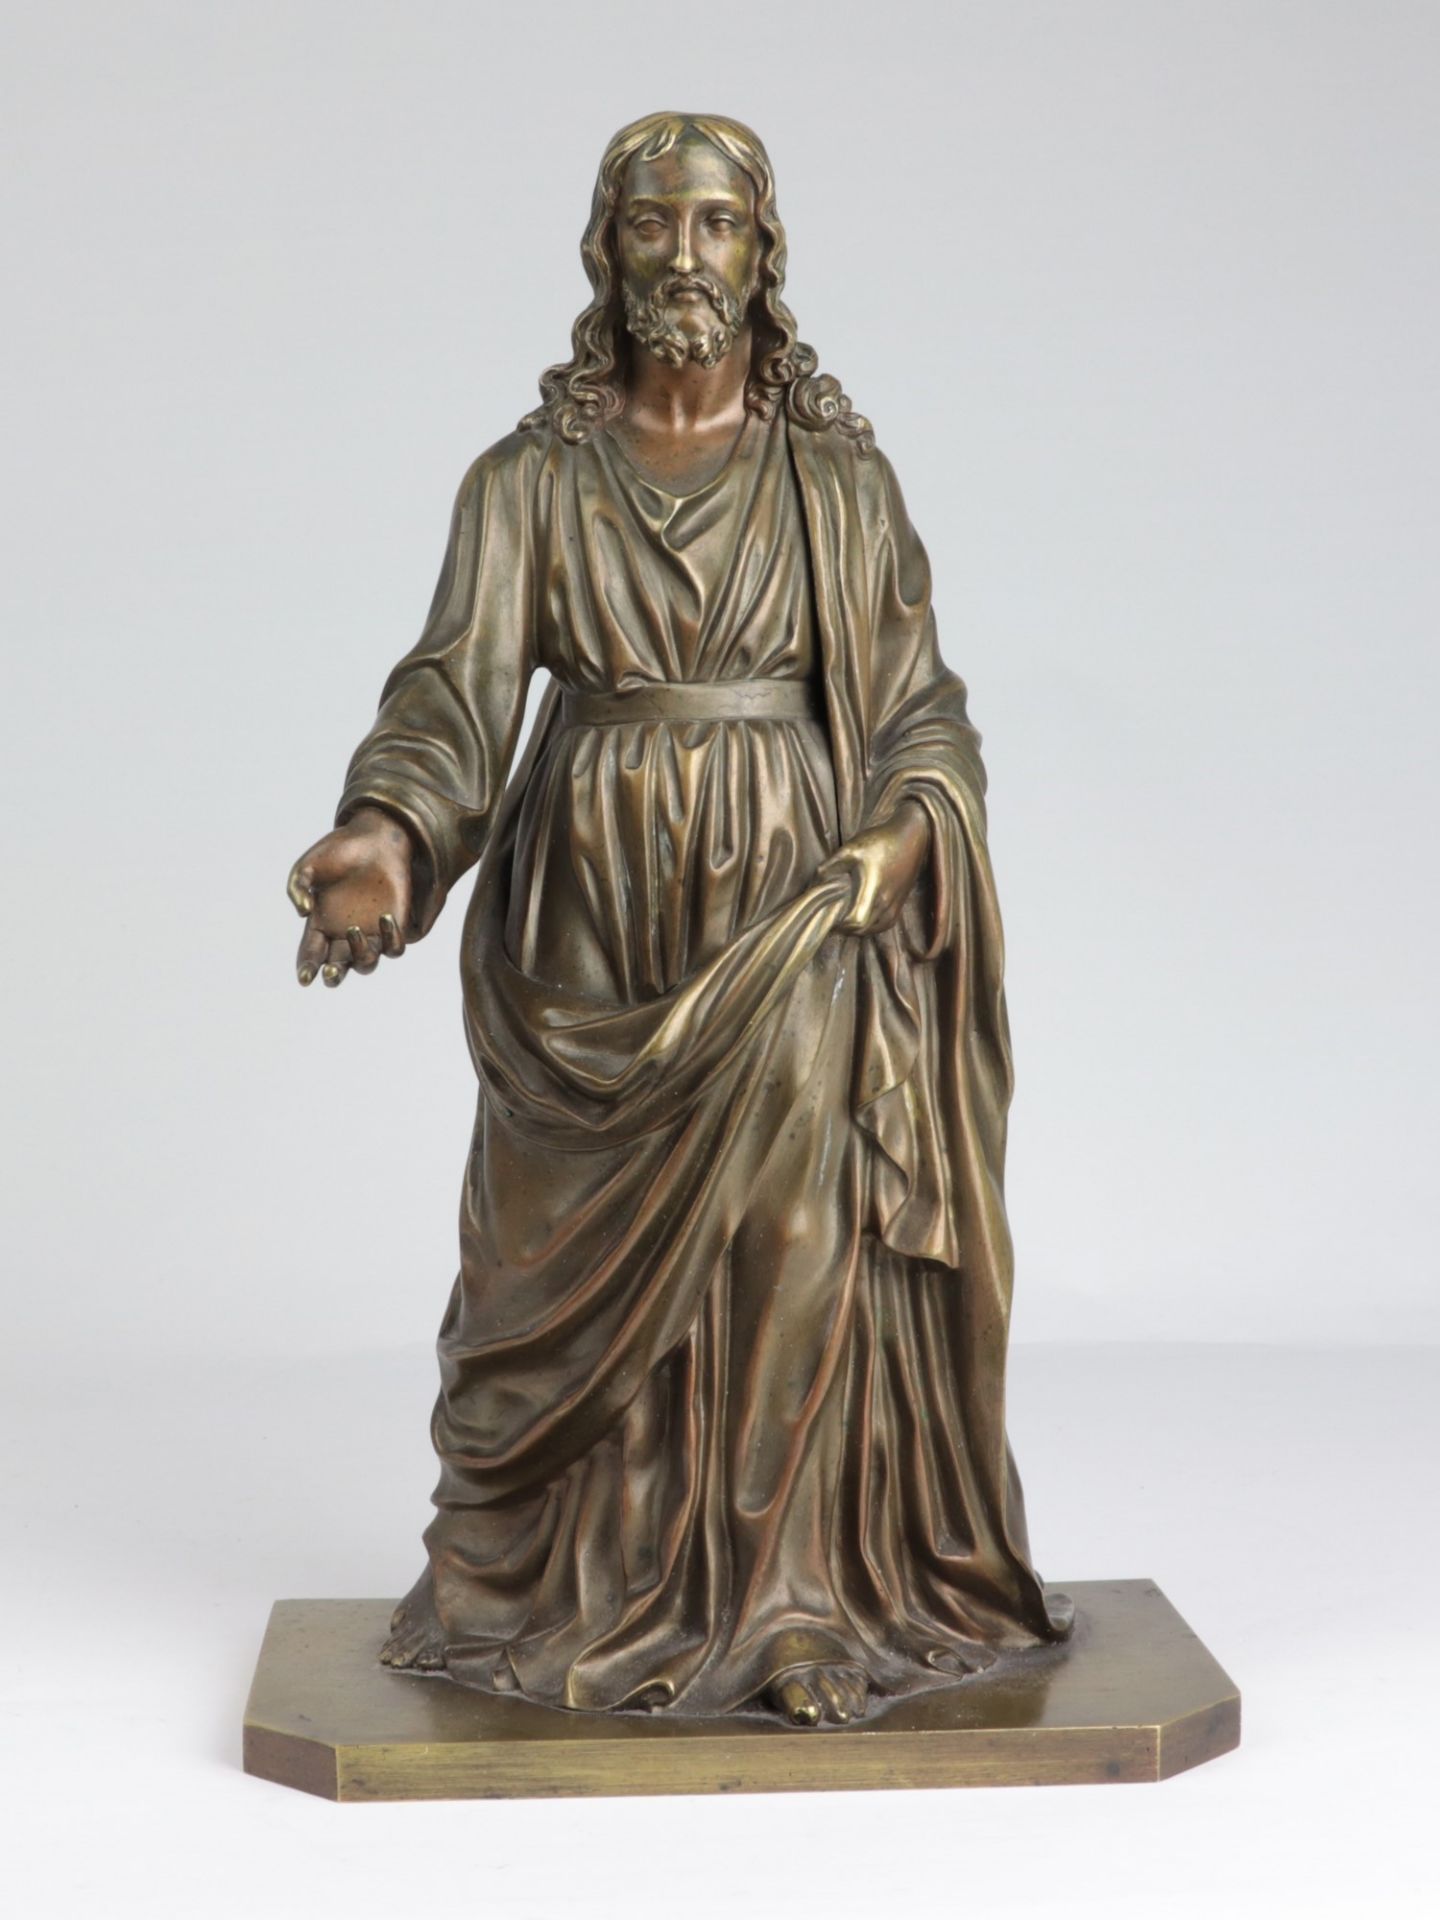 Bronzekulptur um 1900, Bronze, patiniert, vollplastische Figur v. Christus als Prophet, reicher